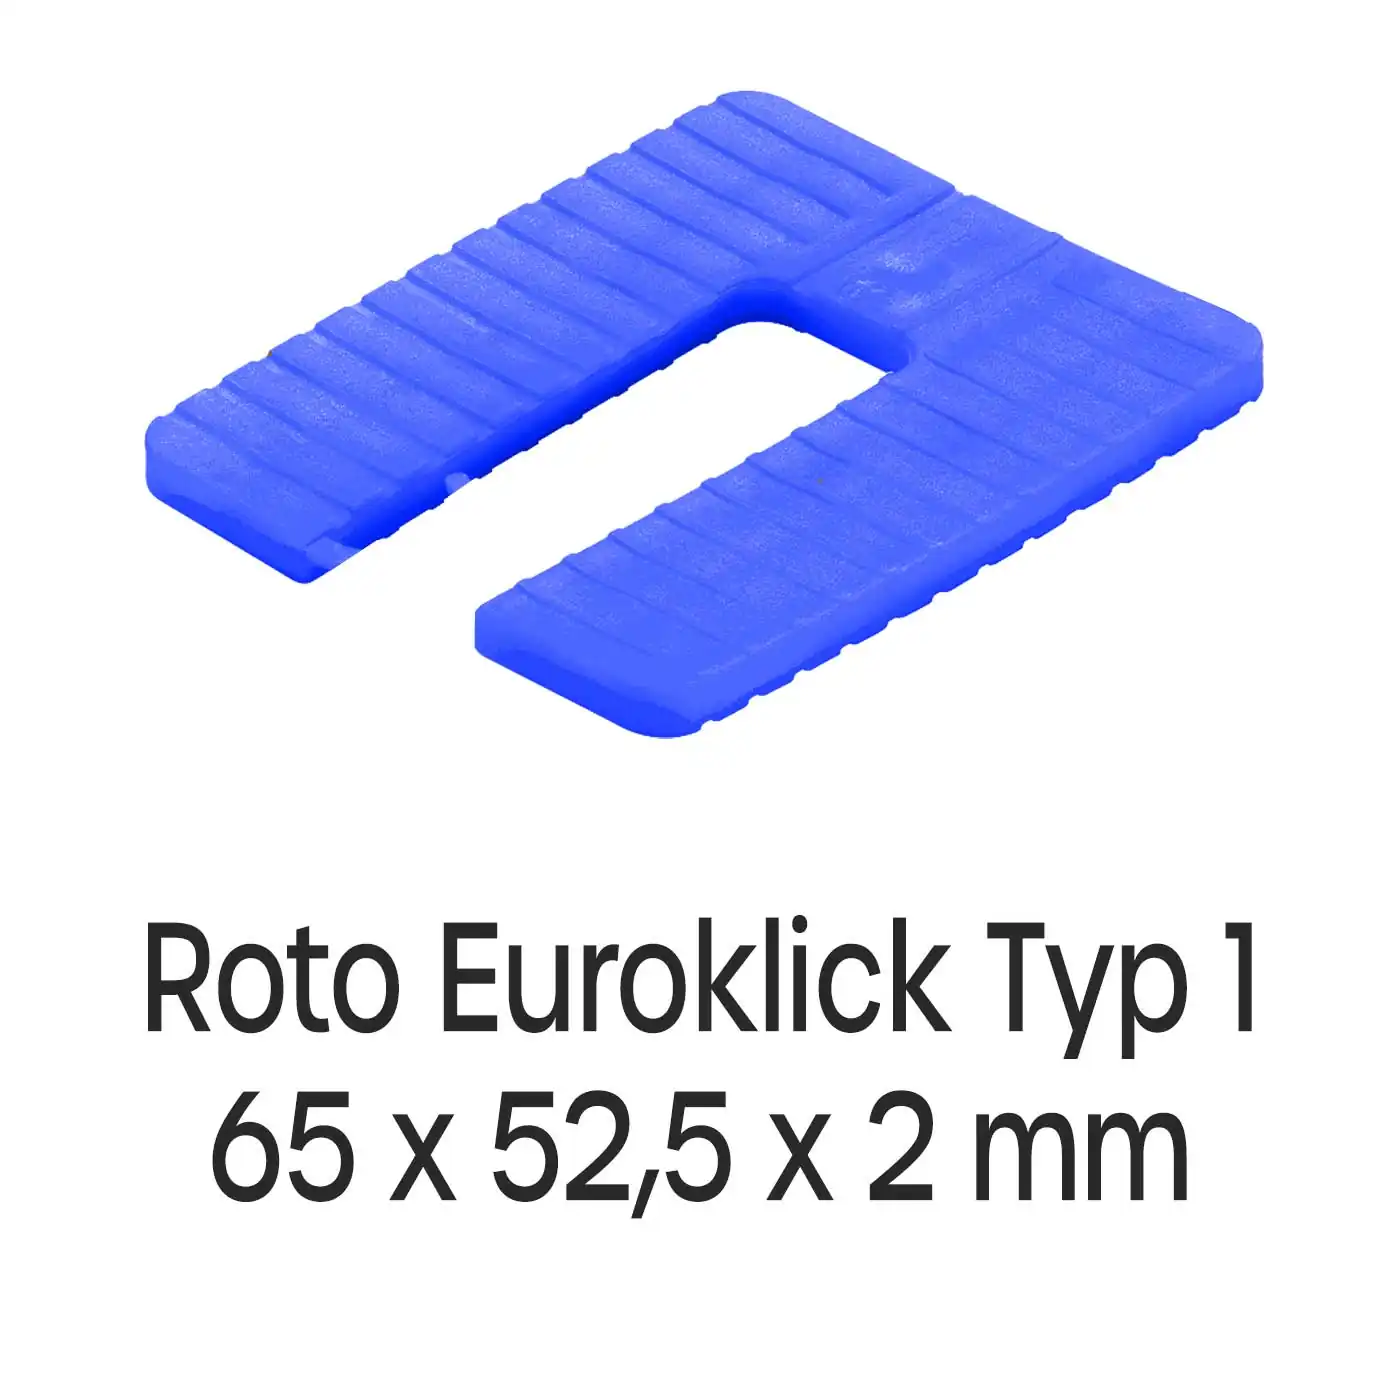 Distanzplatten Roto Euroklick Typ 1 65 x 52,5 x 2 mm 1000 Stück